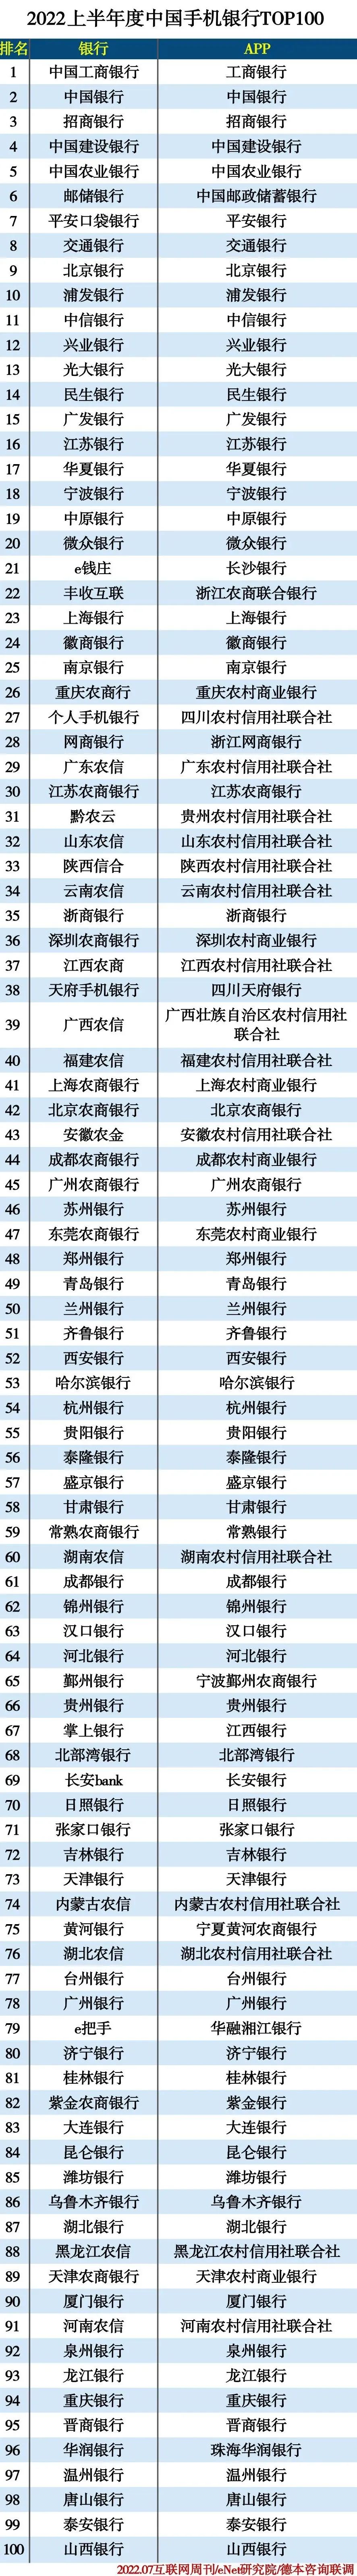 2022上半年度中国手机银行TOP100